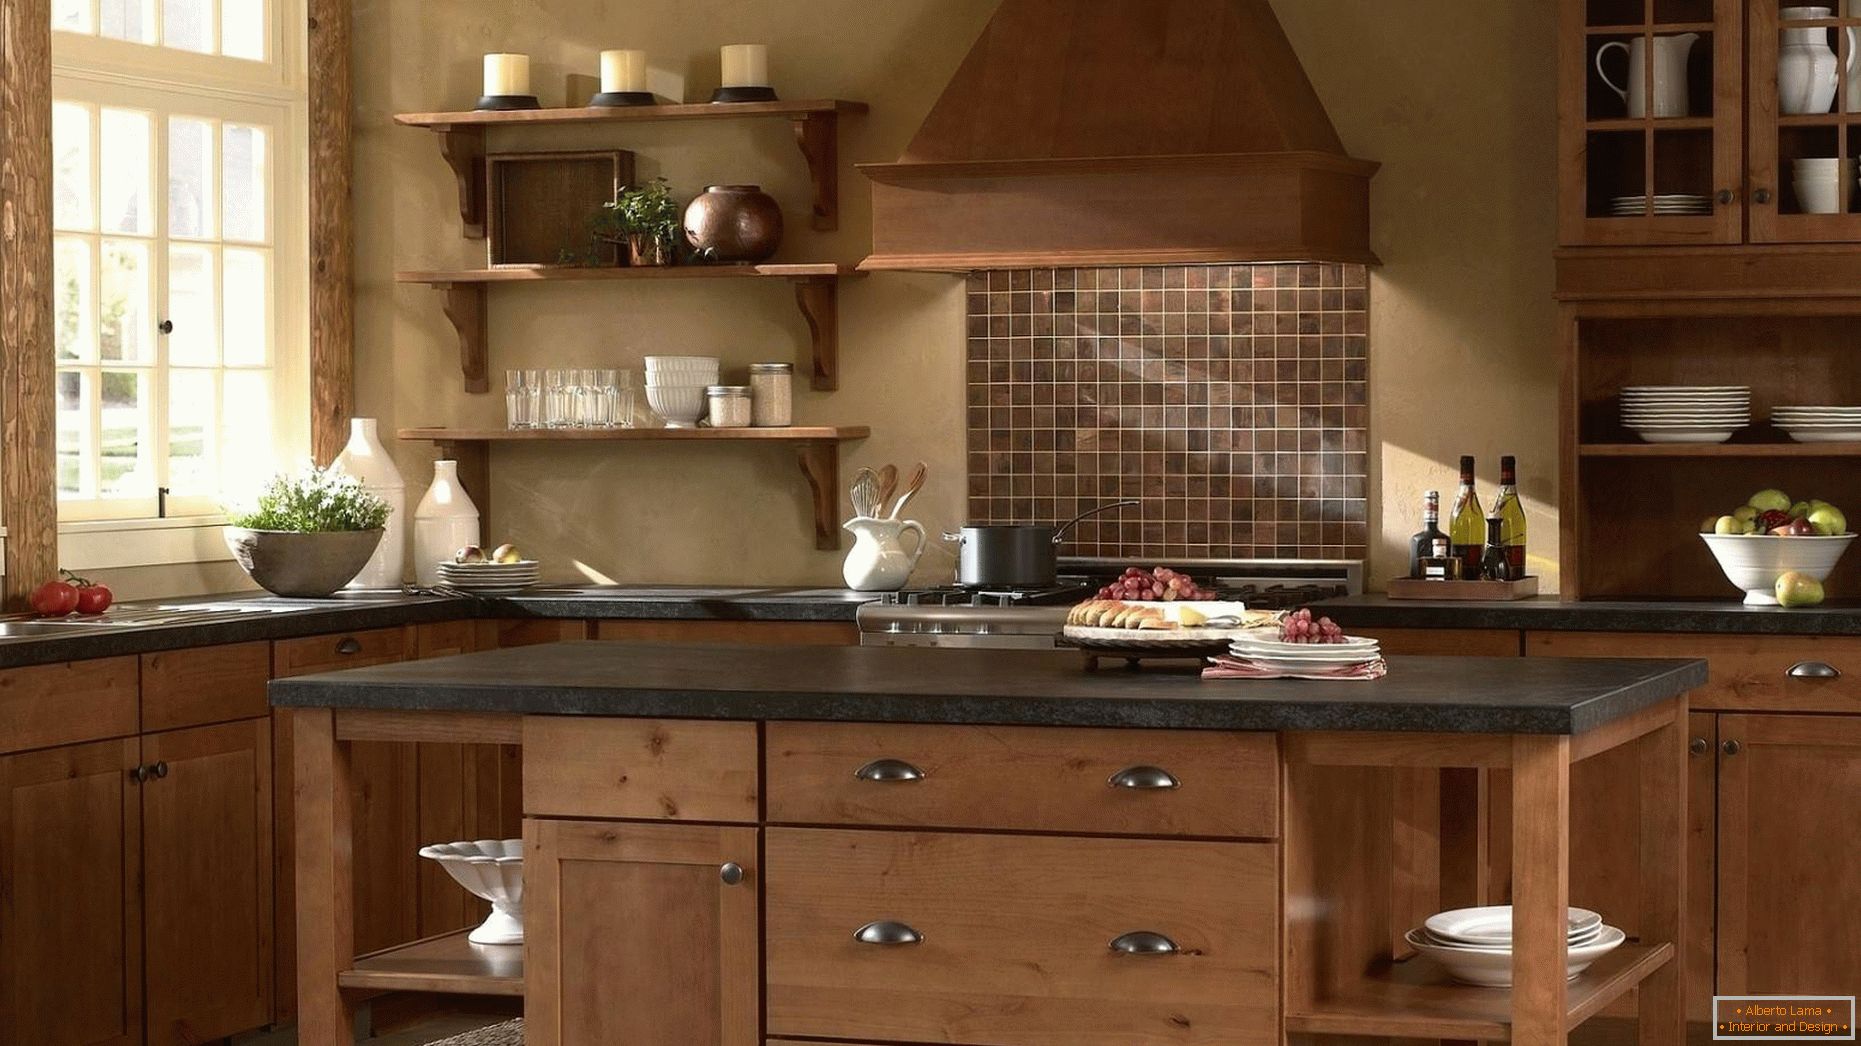 Cozinhas feitas de madeira são clássicas!